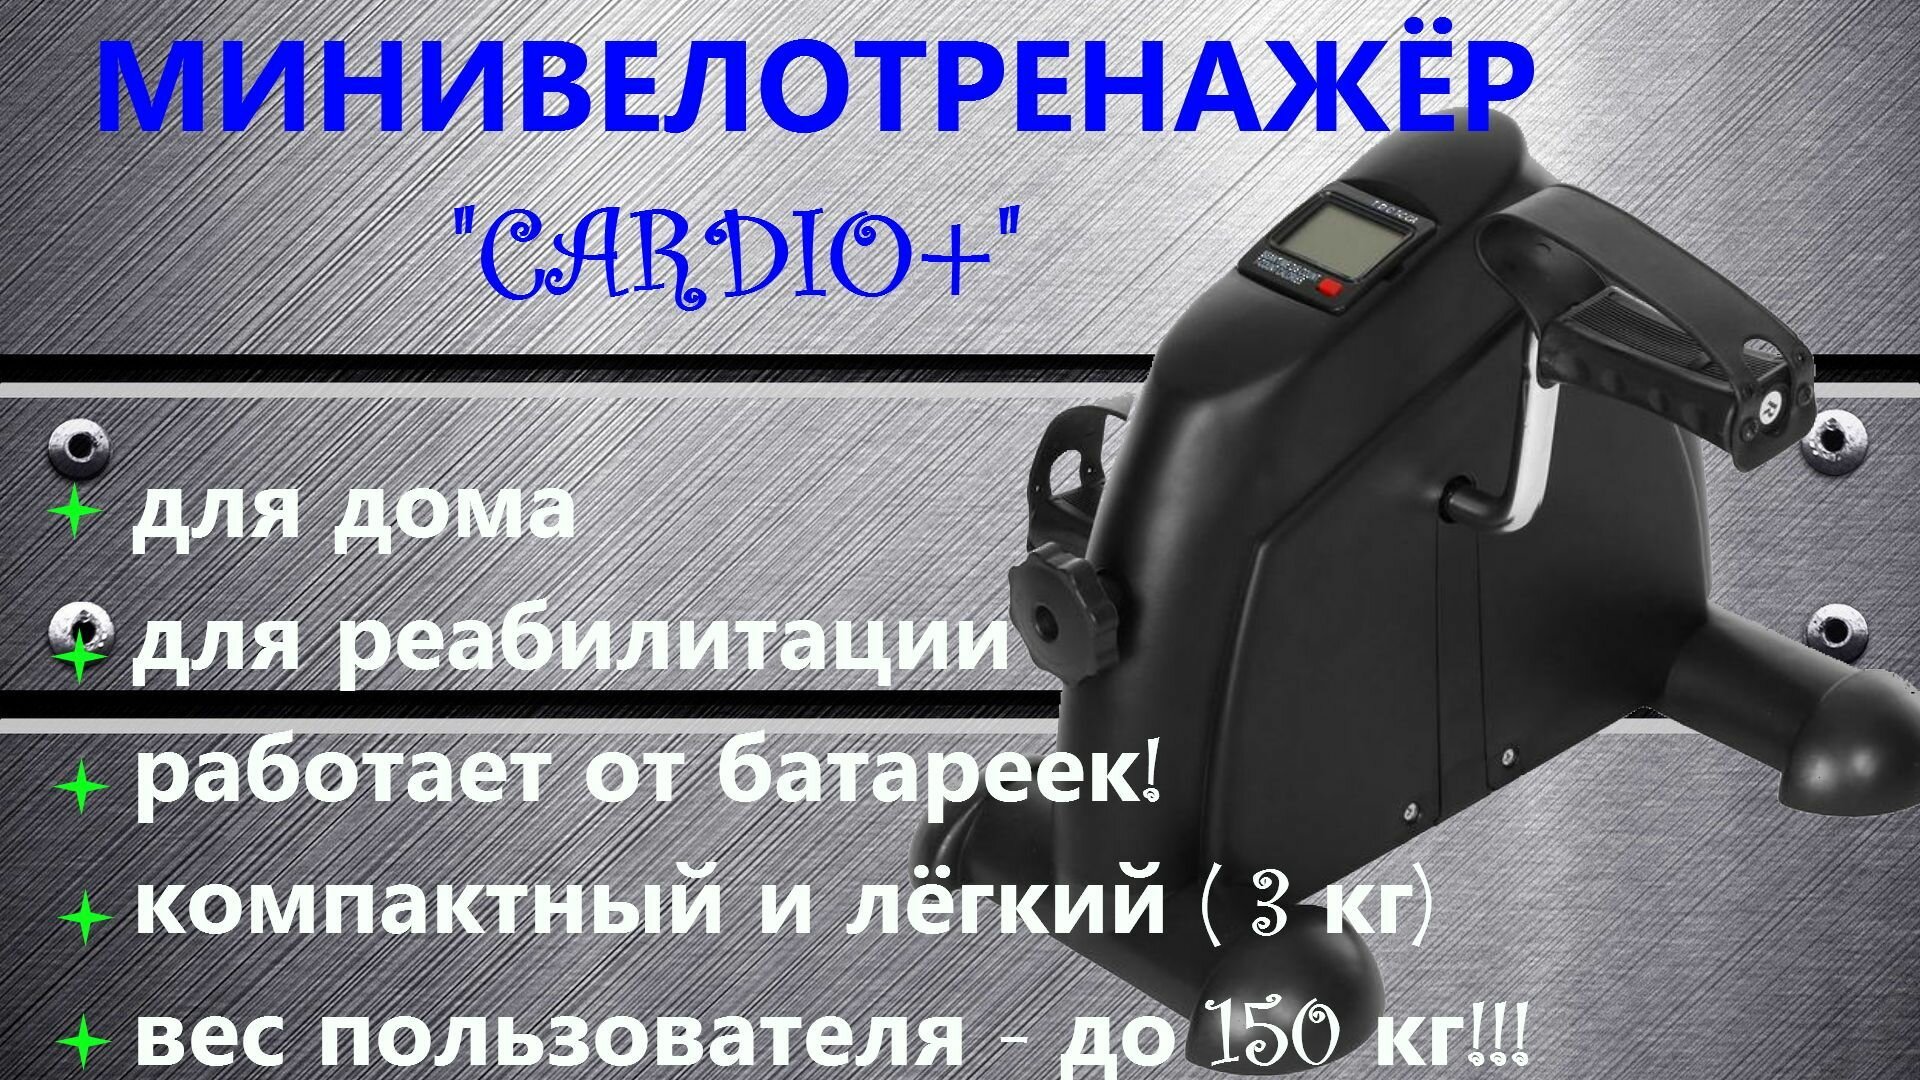 Велотренажер "Cardio+" (с дисплеем) кардио минивелотренажер для похудения и реабилитации